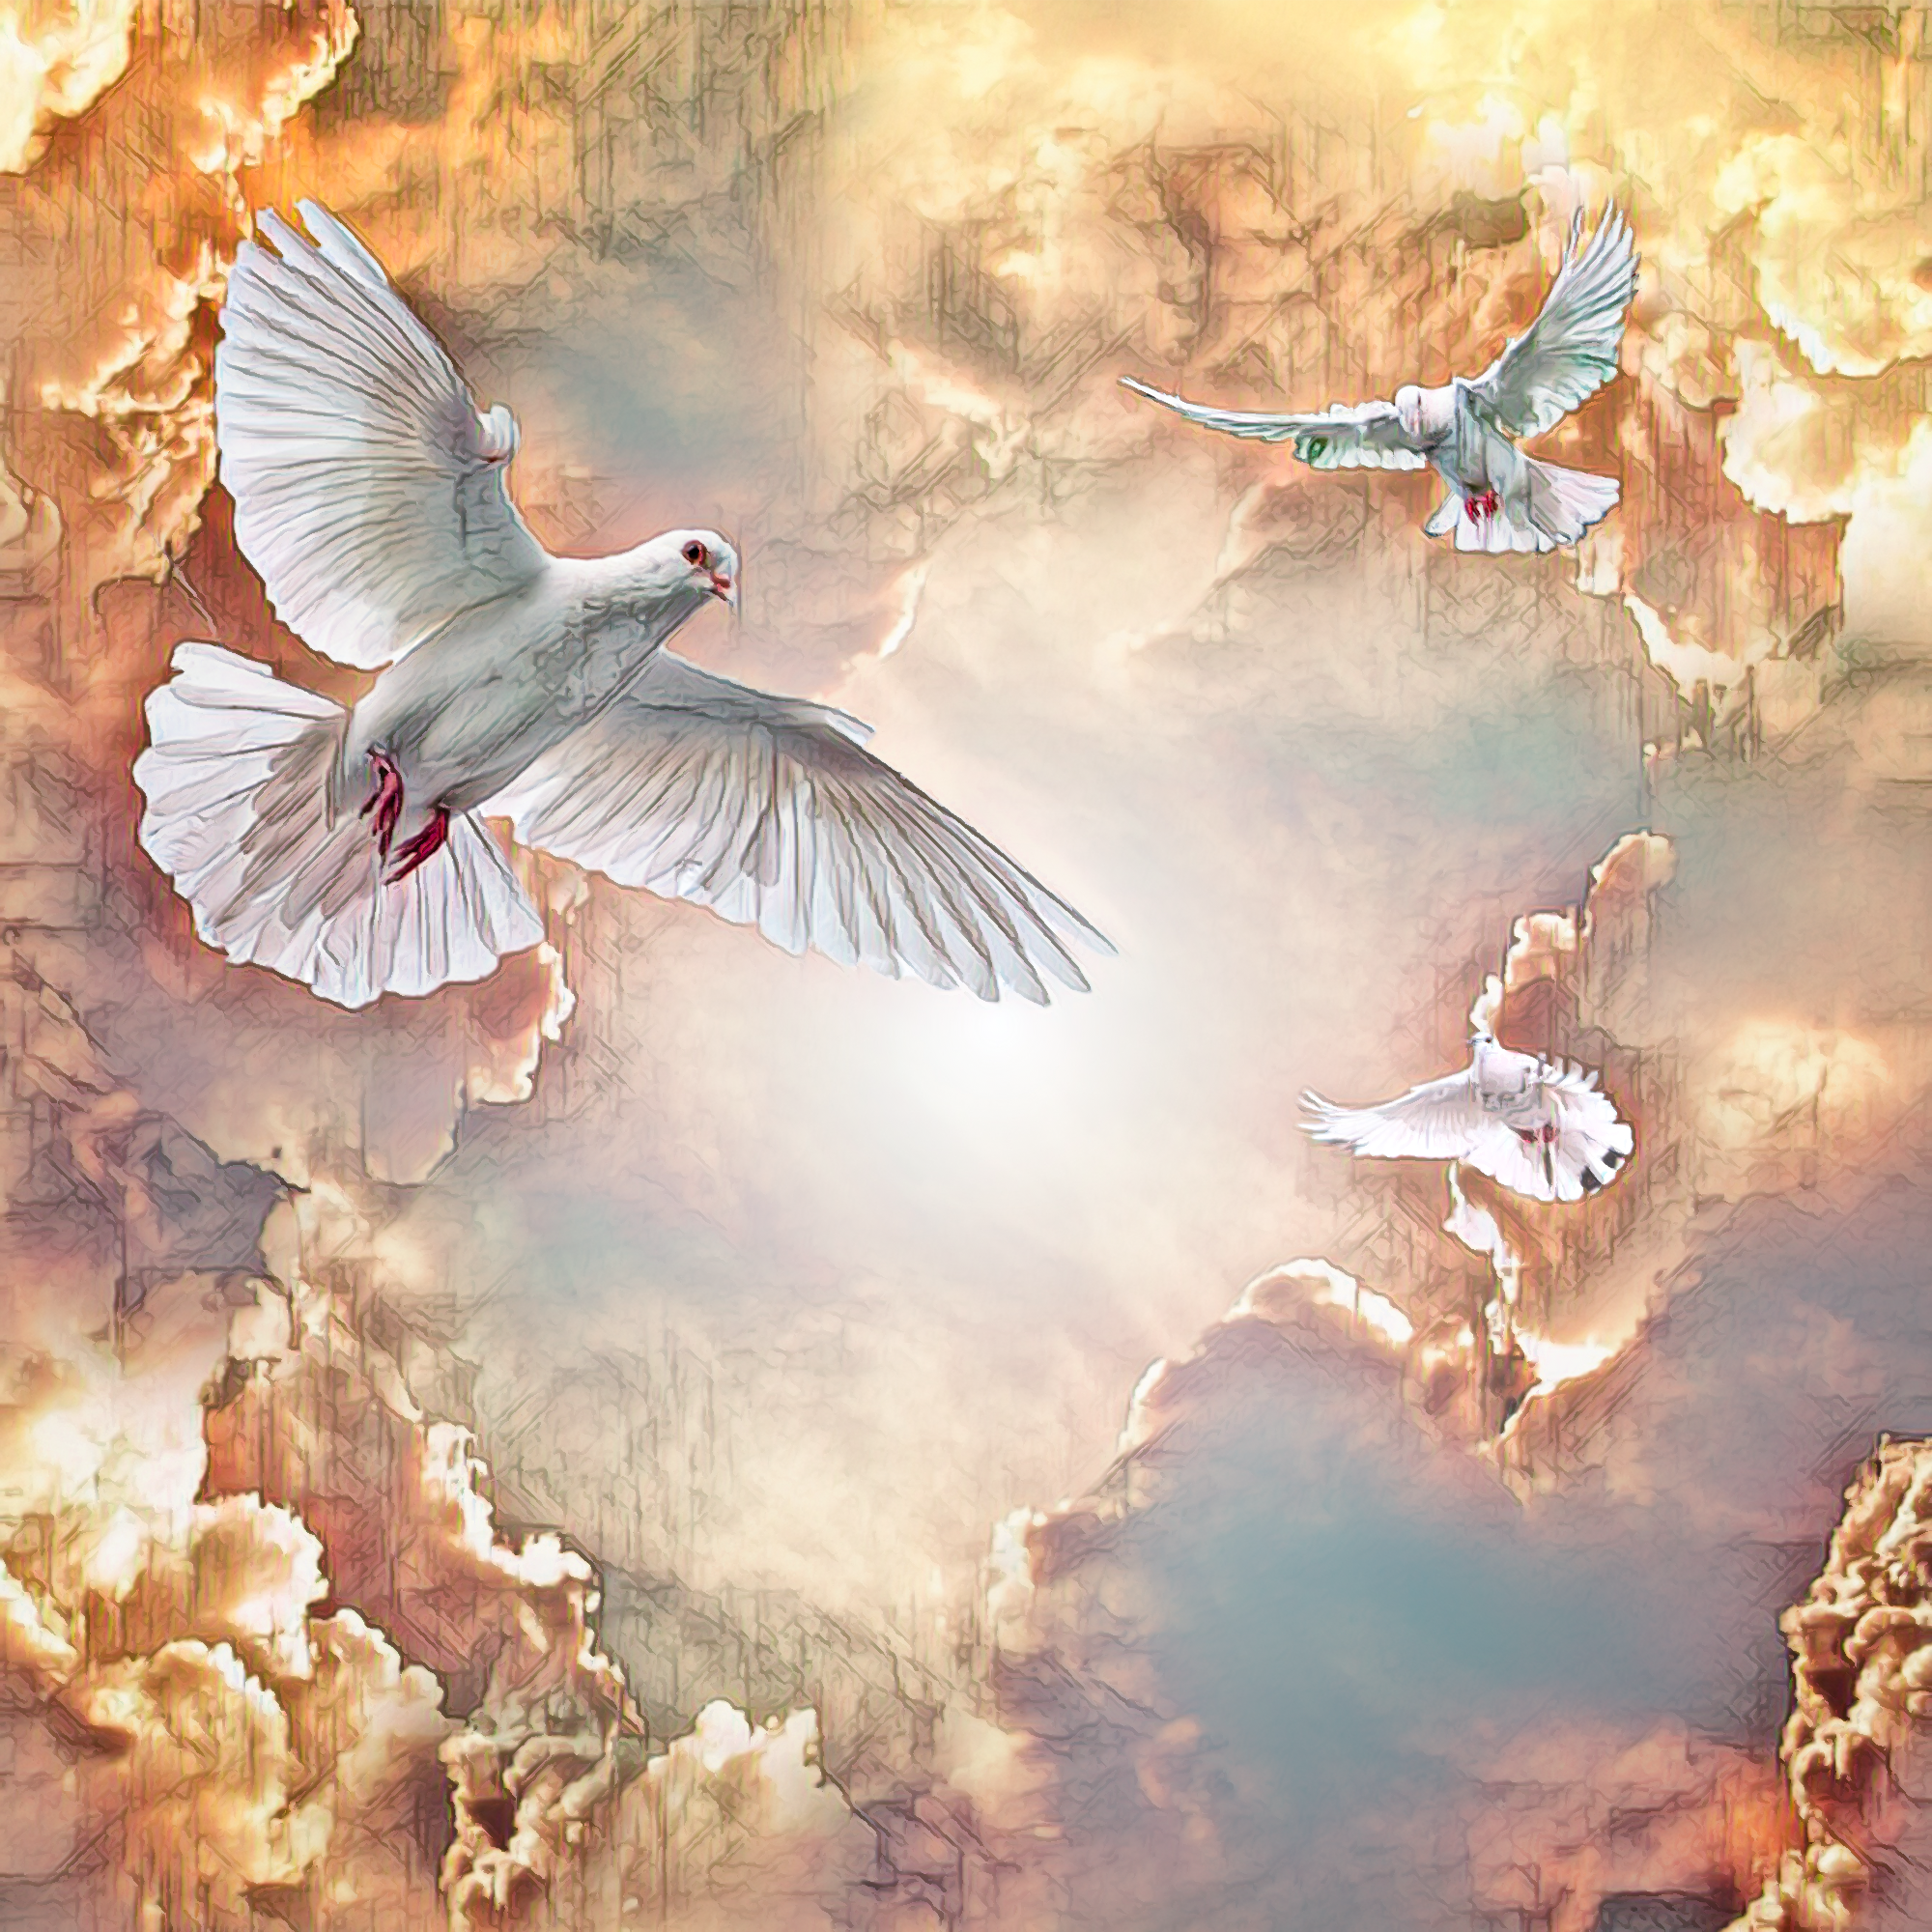 無料イラスト 背景画像素材 天国の光と空から天使のように飛ぶ鳩 Free Illustlation くりえいてぃぶ